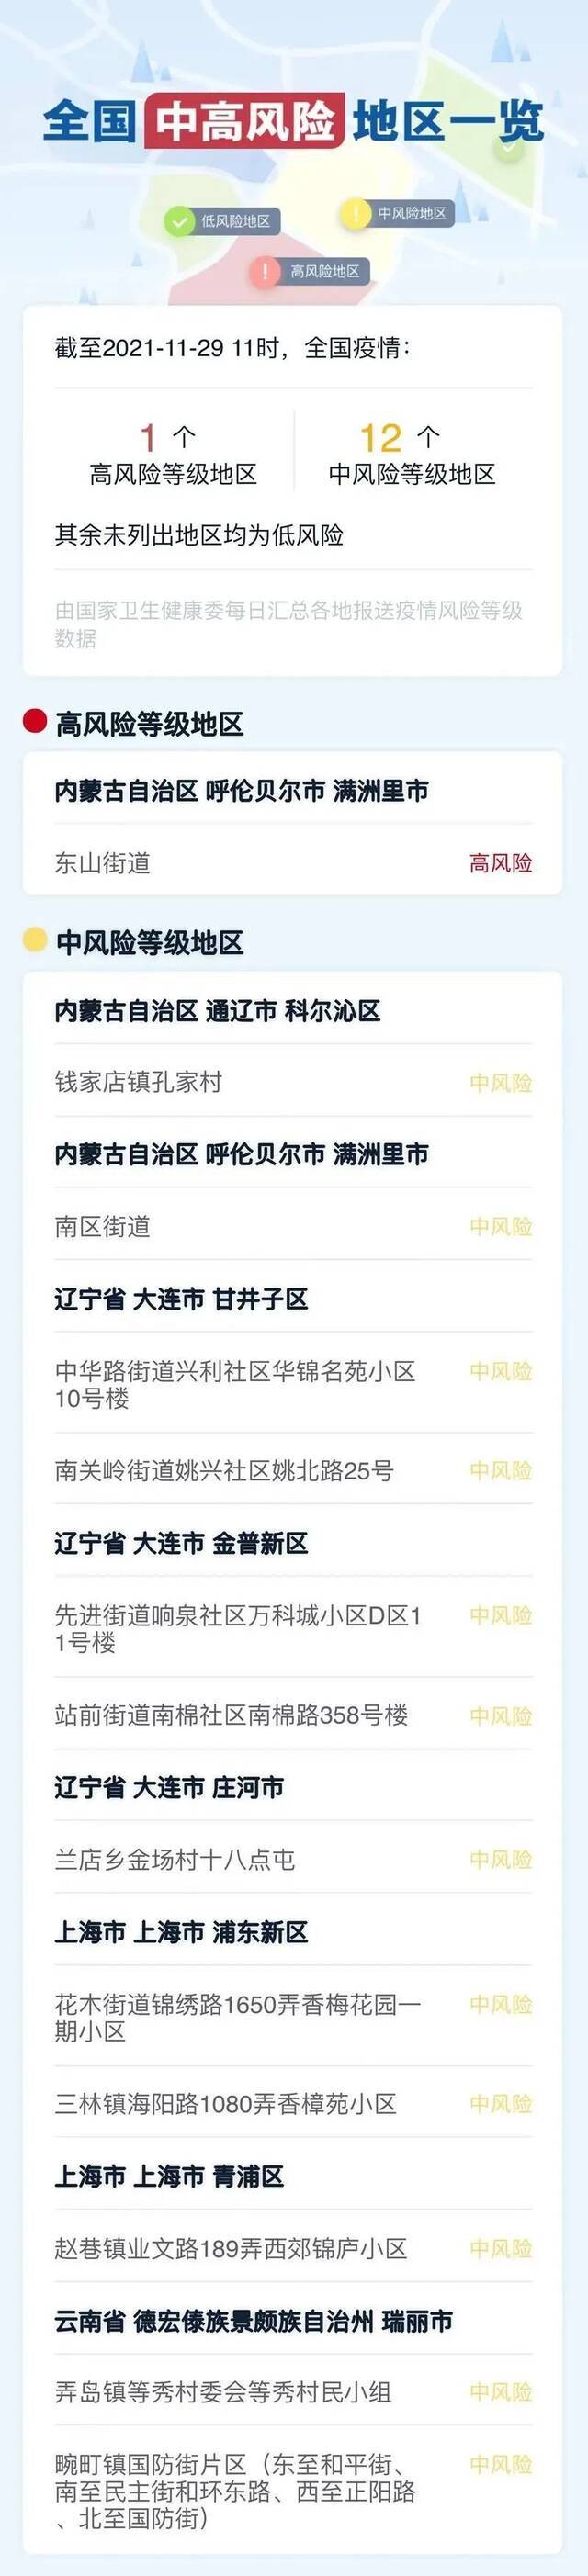 重庆一区县考核招聘31人  洪崖洞—广阳岛航线复航